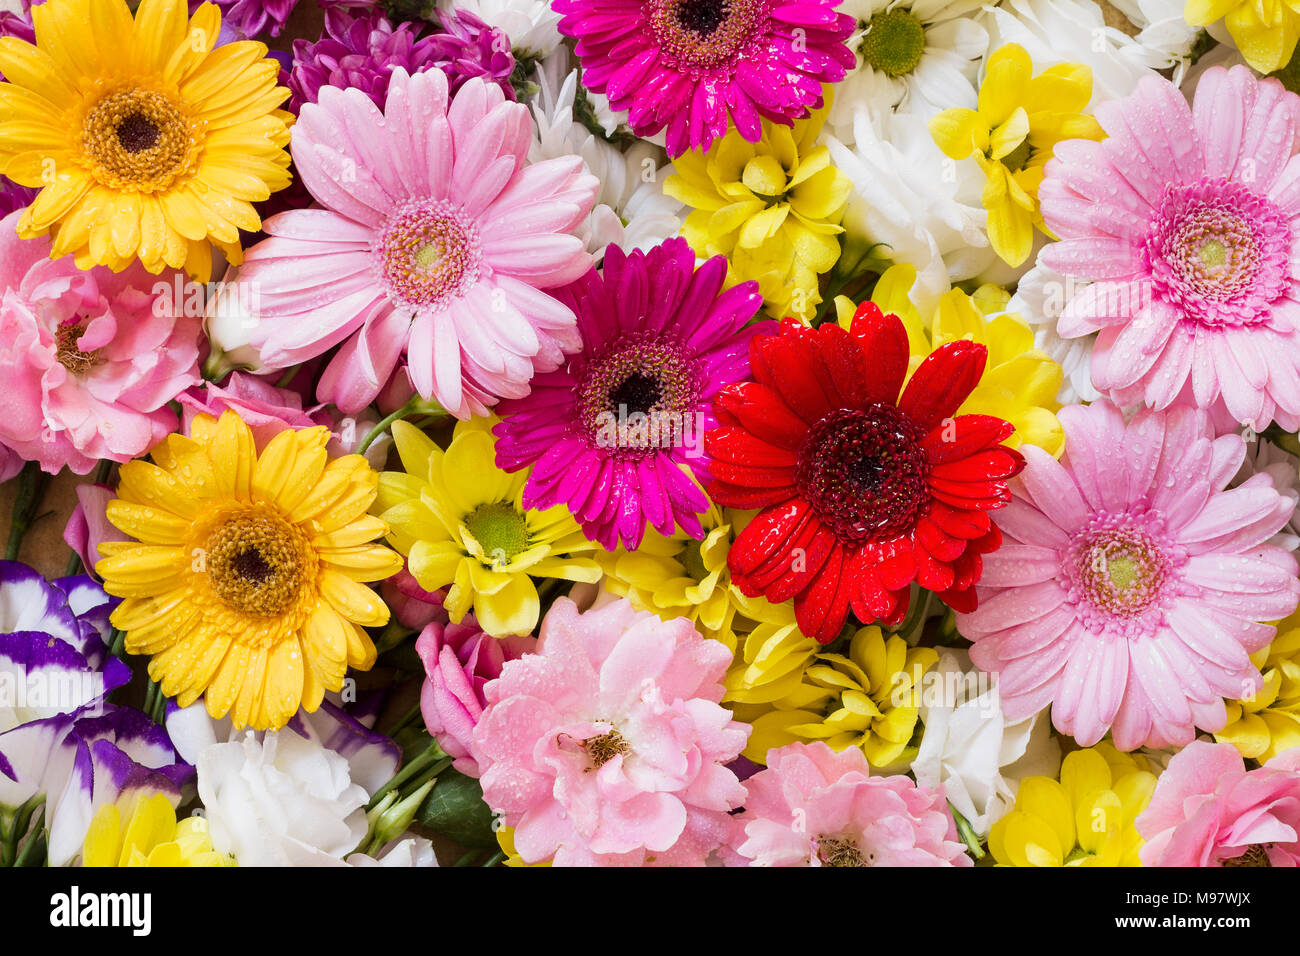 Die Gerbera und anderen bunten Blumen als natürlichen Hintergrund Bild mit weißen, gelben, roten und rosa Blüten - Flach Fotografie angeordnet Stockfoto